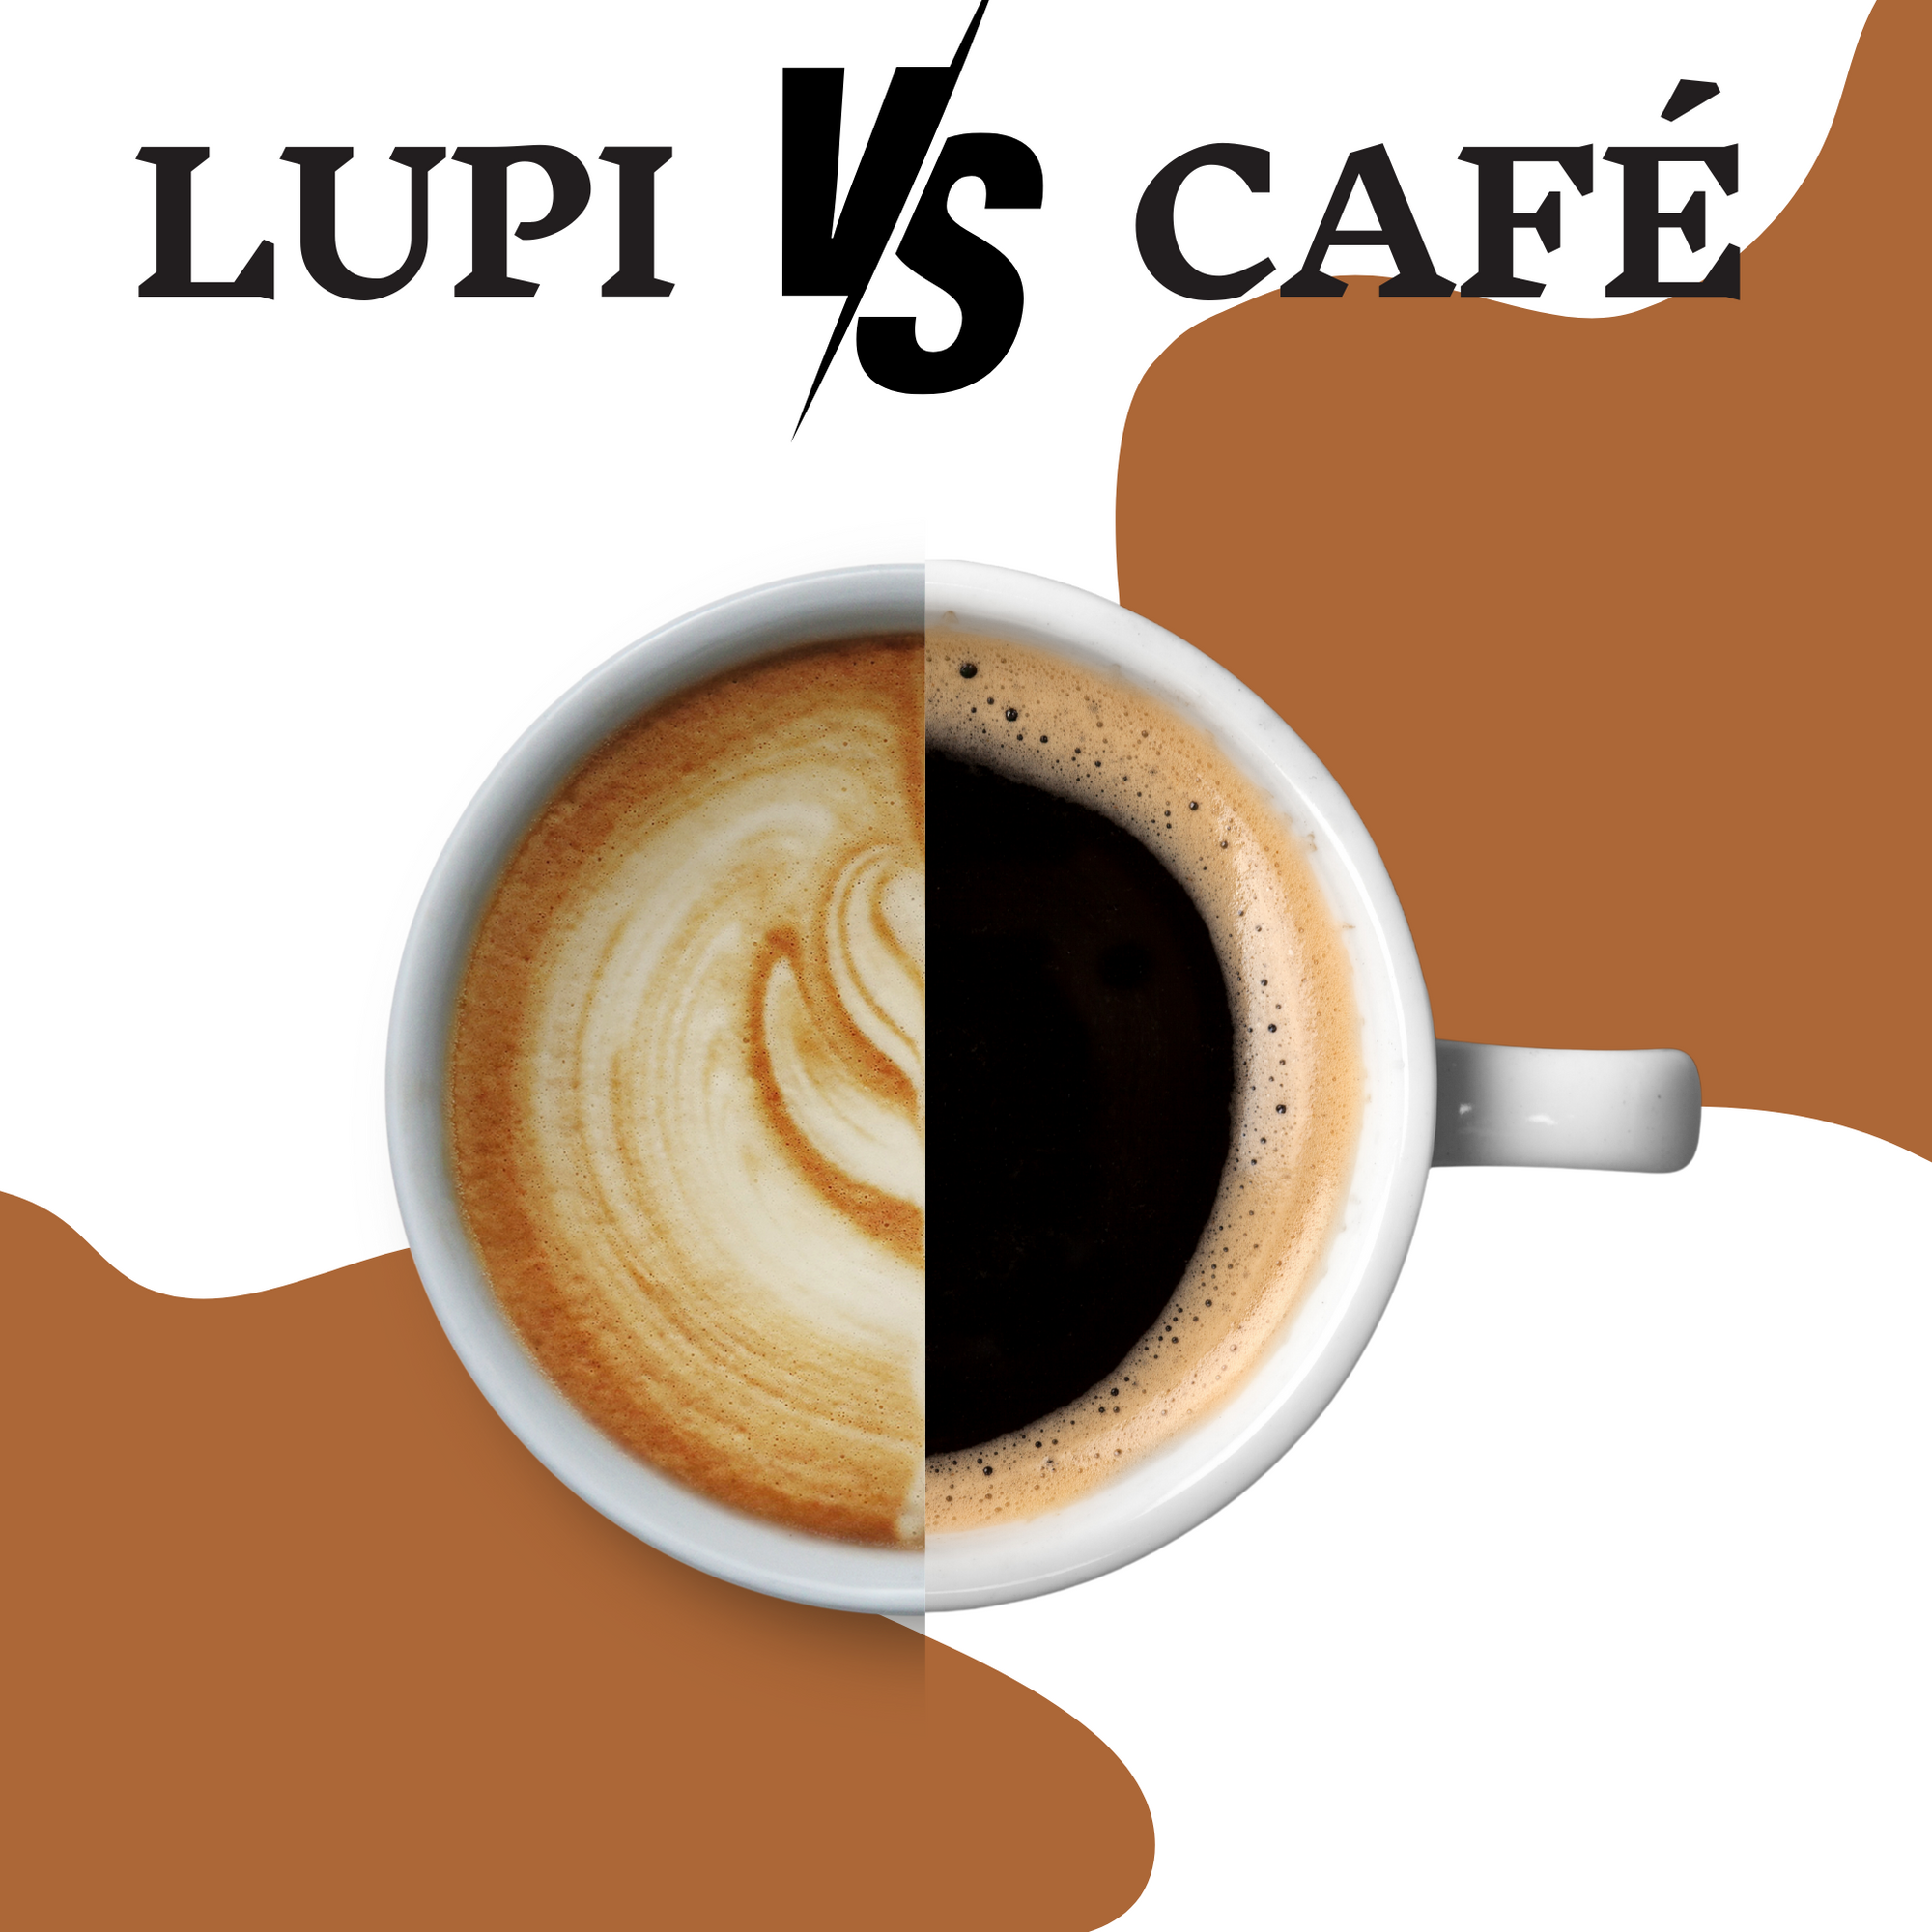 Café de lupin vs café traditionnel: Quelle est la meilleure option?